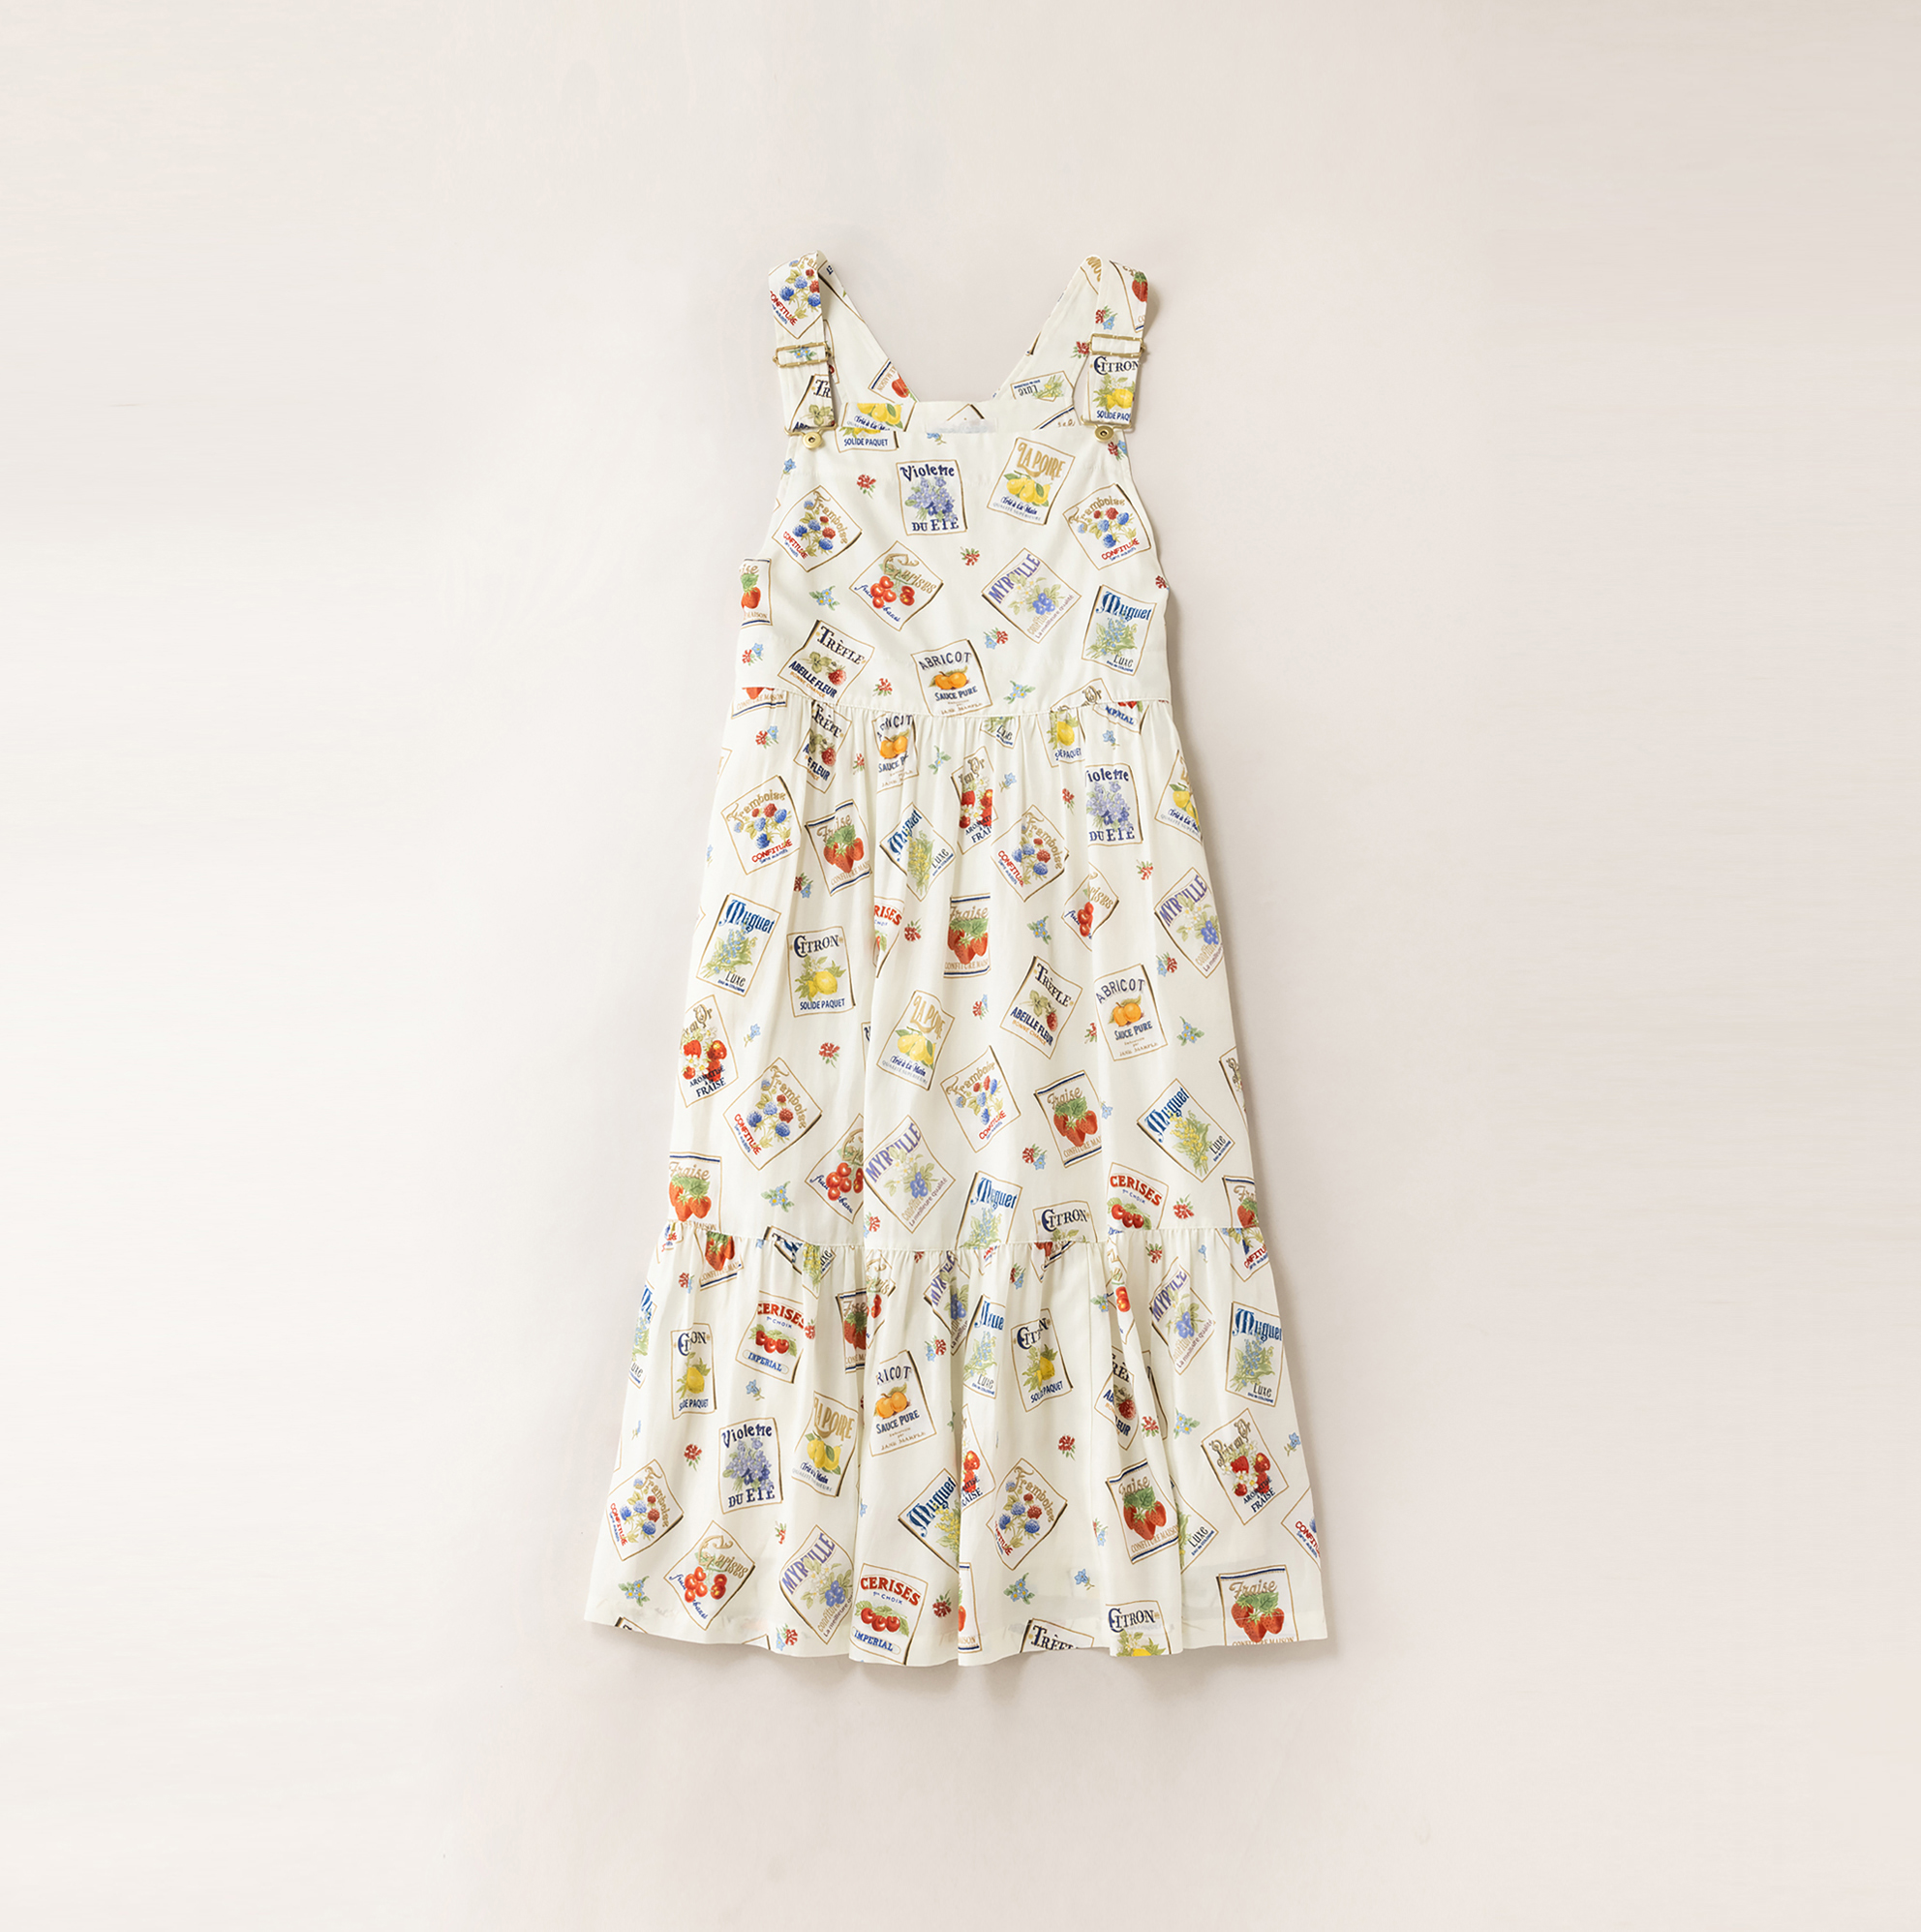 6,800円Jane Marple My Favorite labelsのサロペットスカート